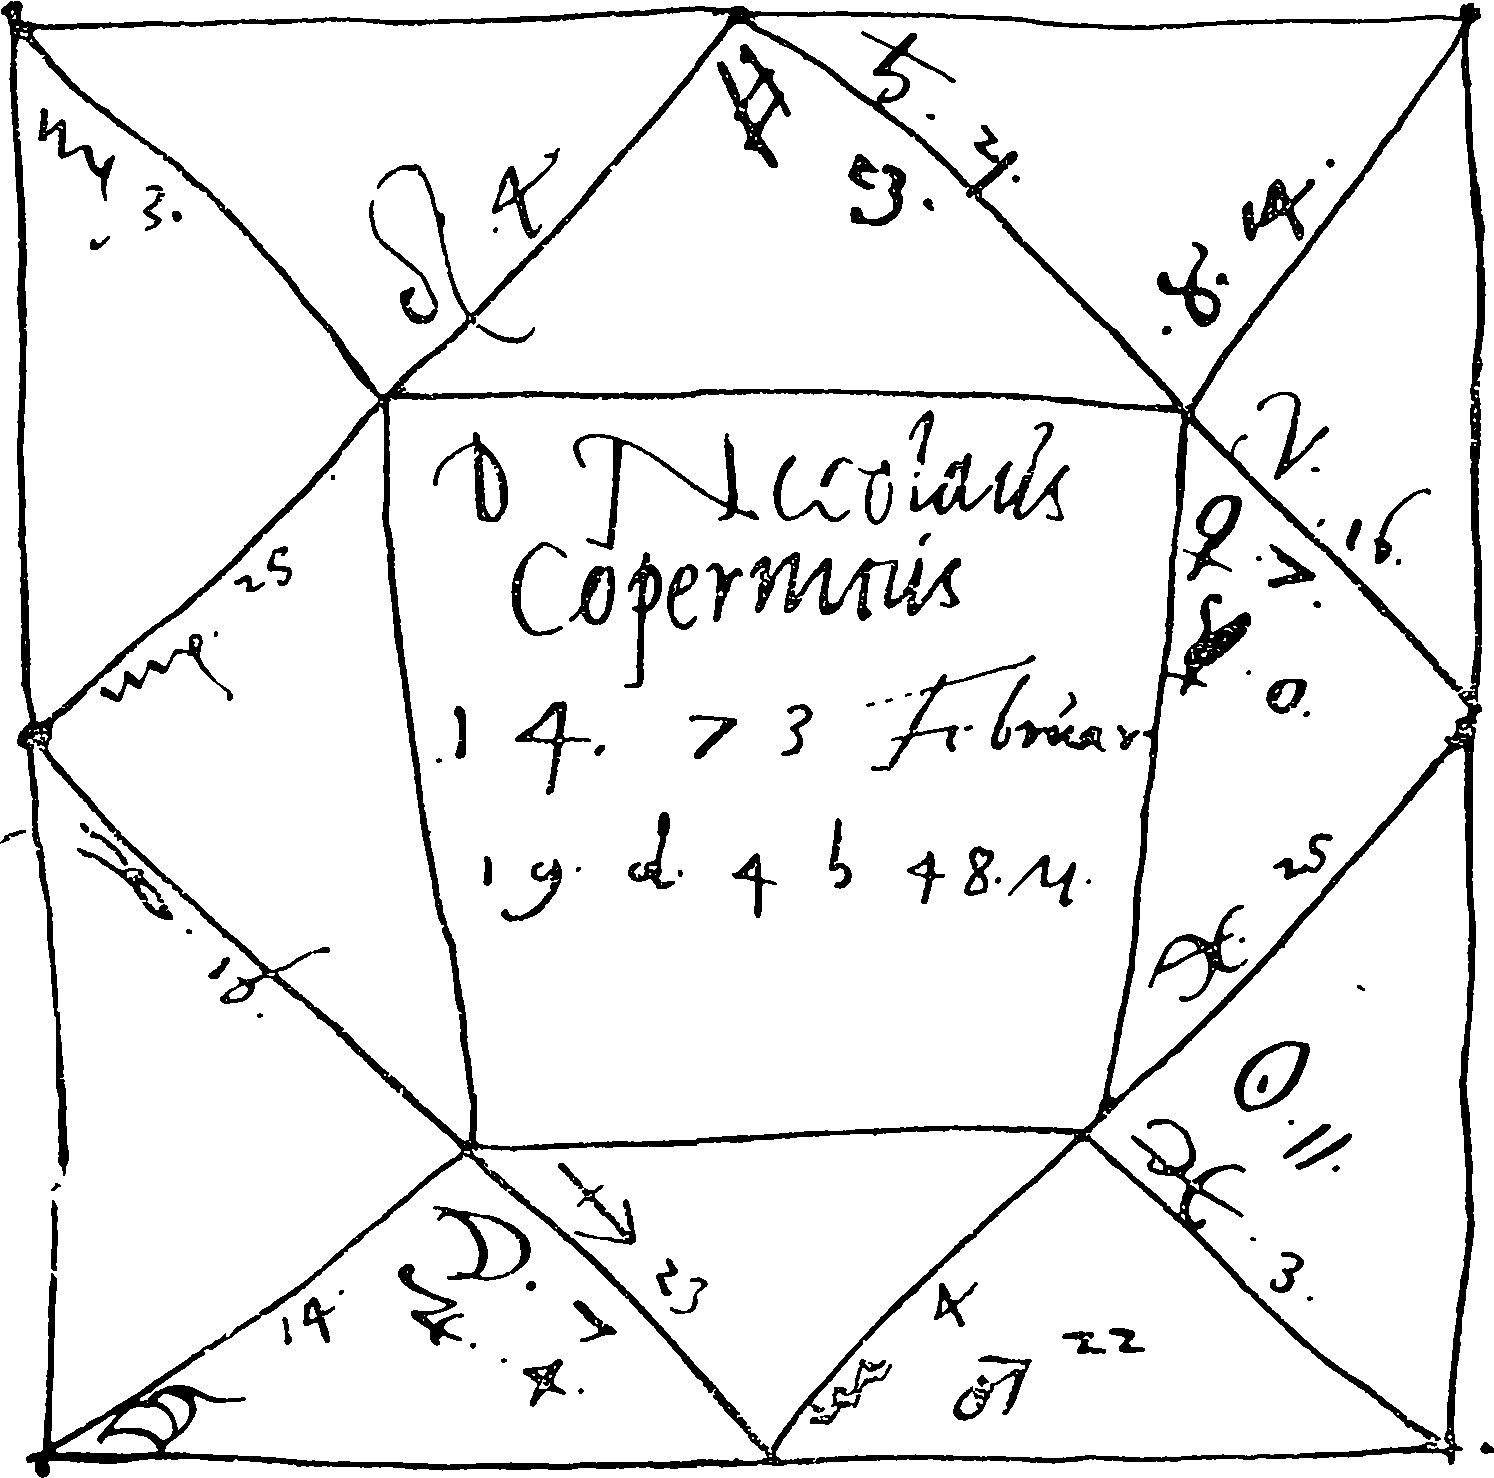 Гороскоп Коперника, составленный около 1542 г. В середине надпись: Г[осподин] Николай Коперник, 1473, февраль 19, 4 ч. 48 м.